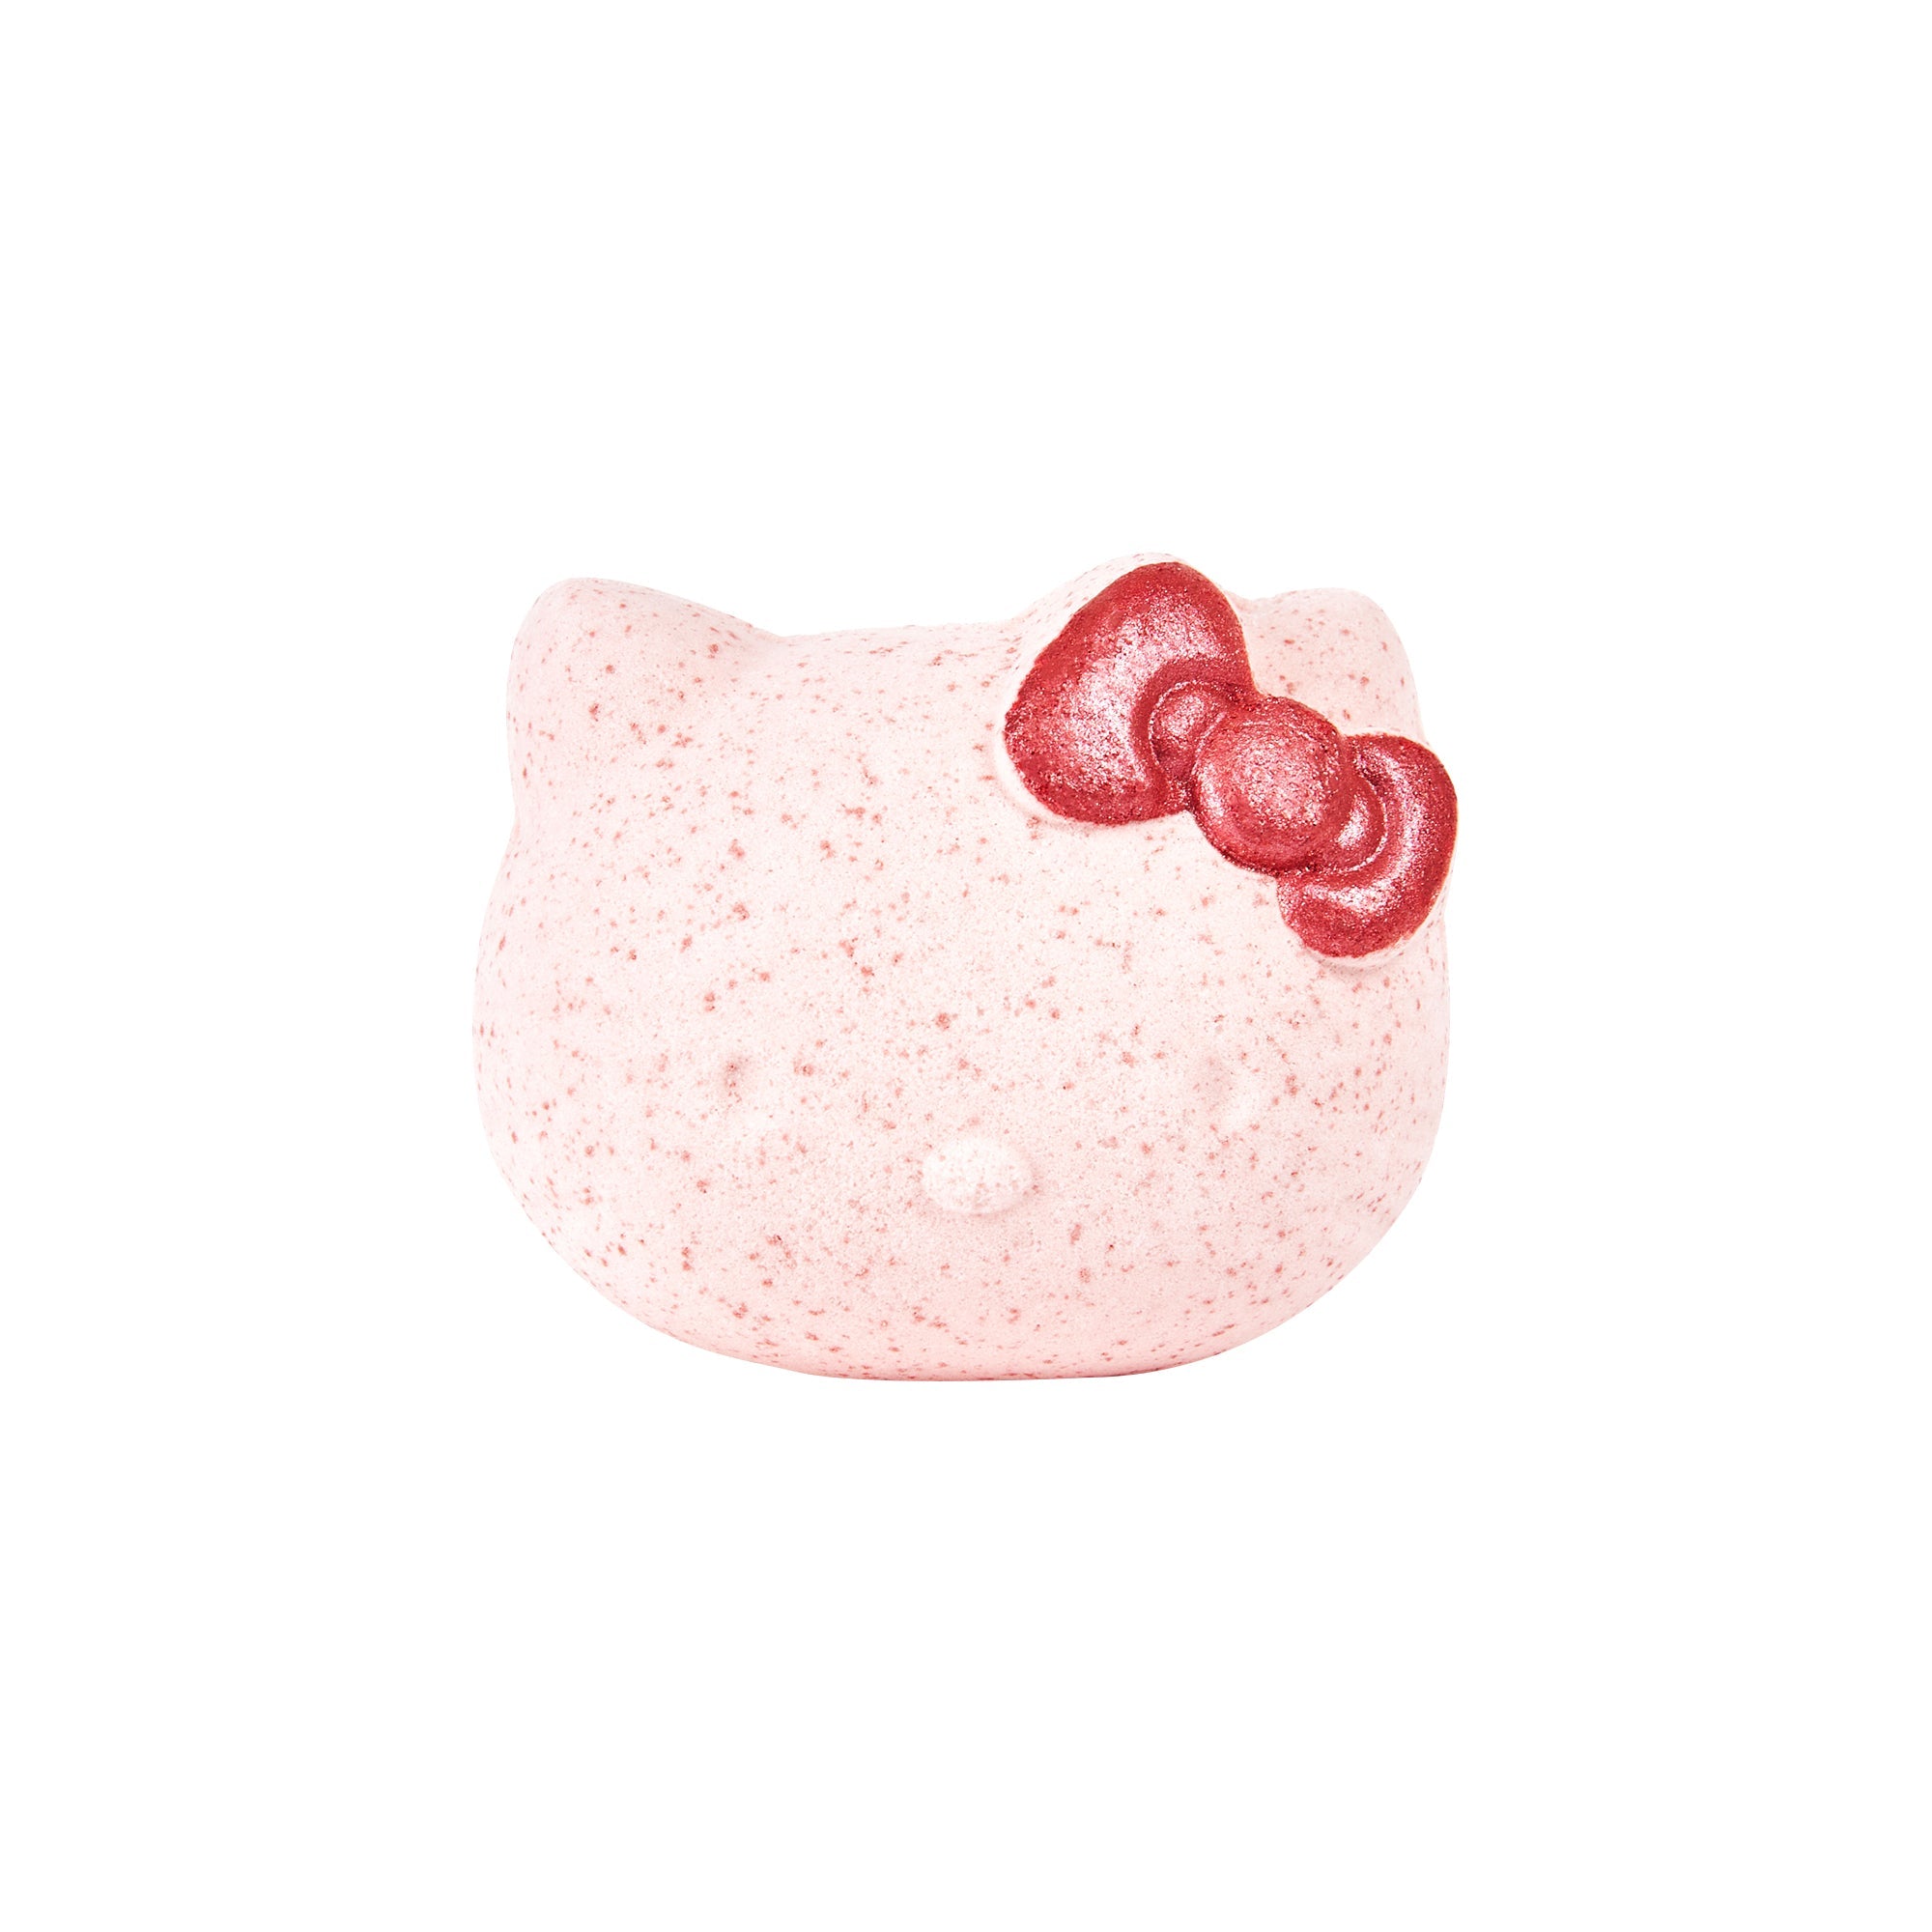 Hello Kitty Silky Skin Spa Set - Peach Petals – The Crème Shop